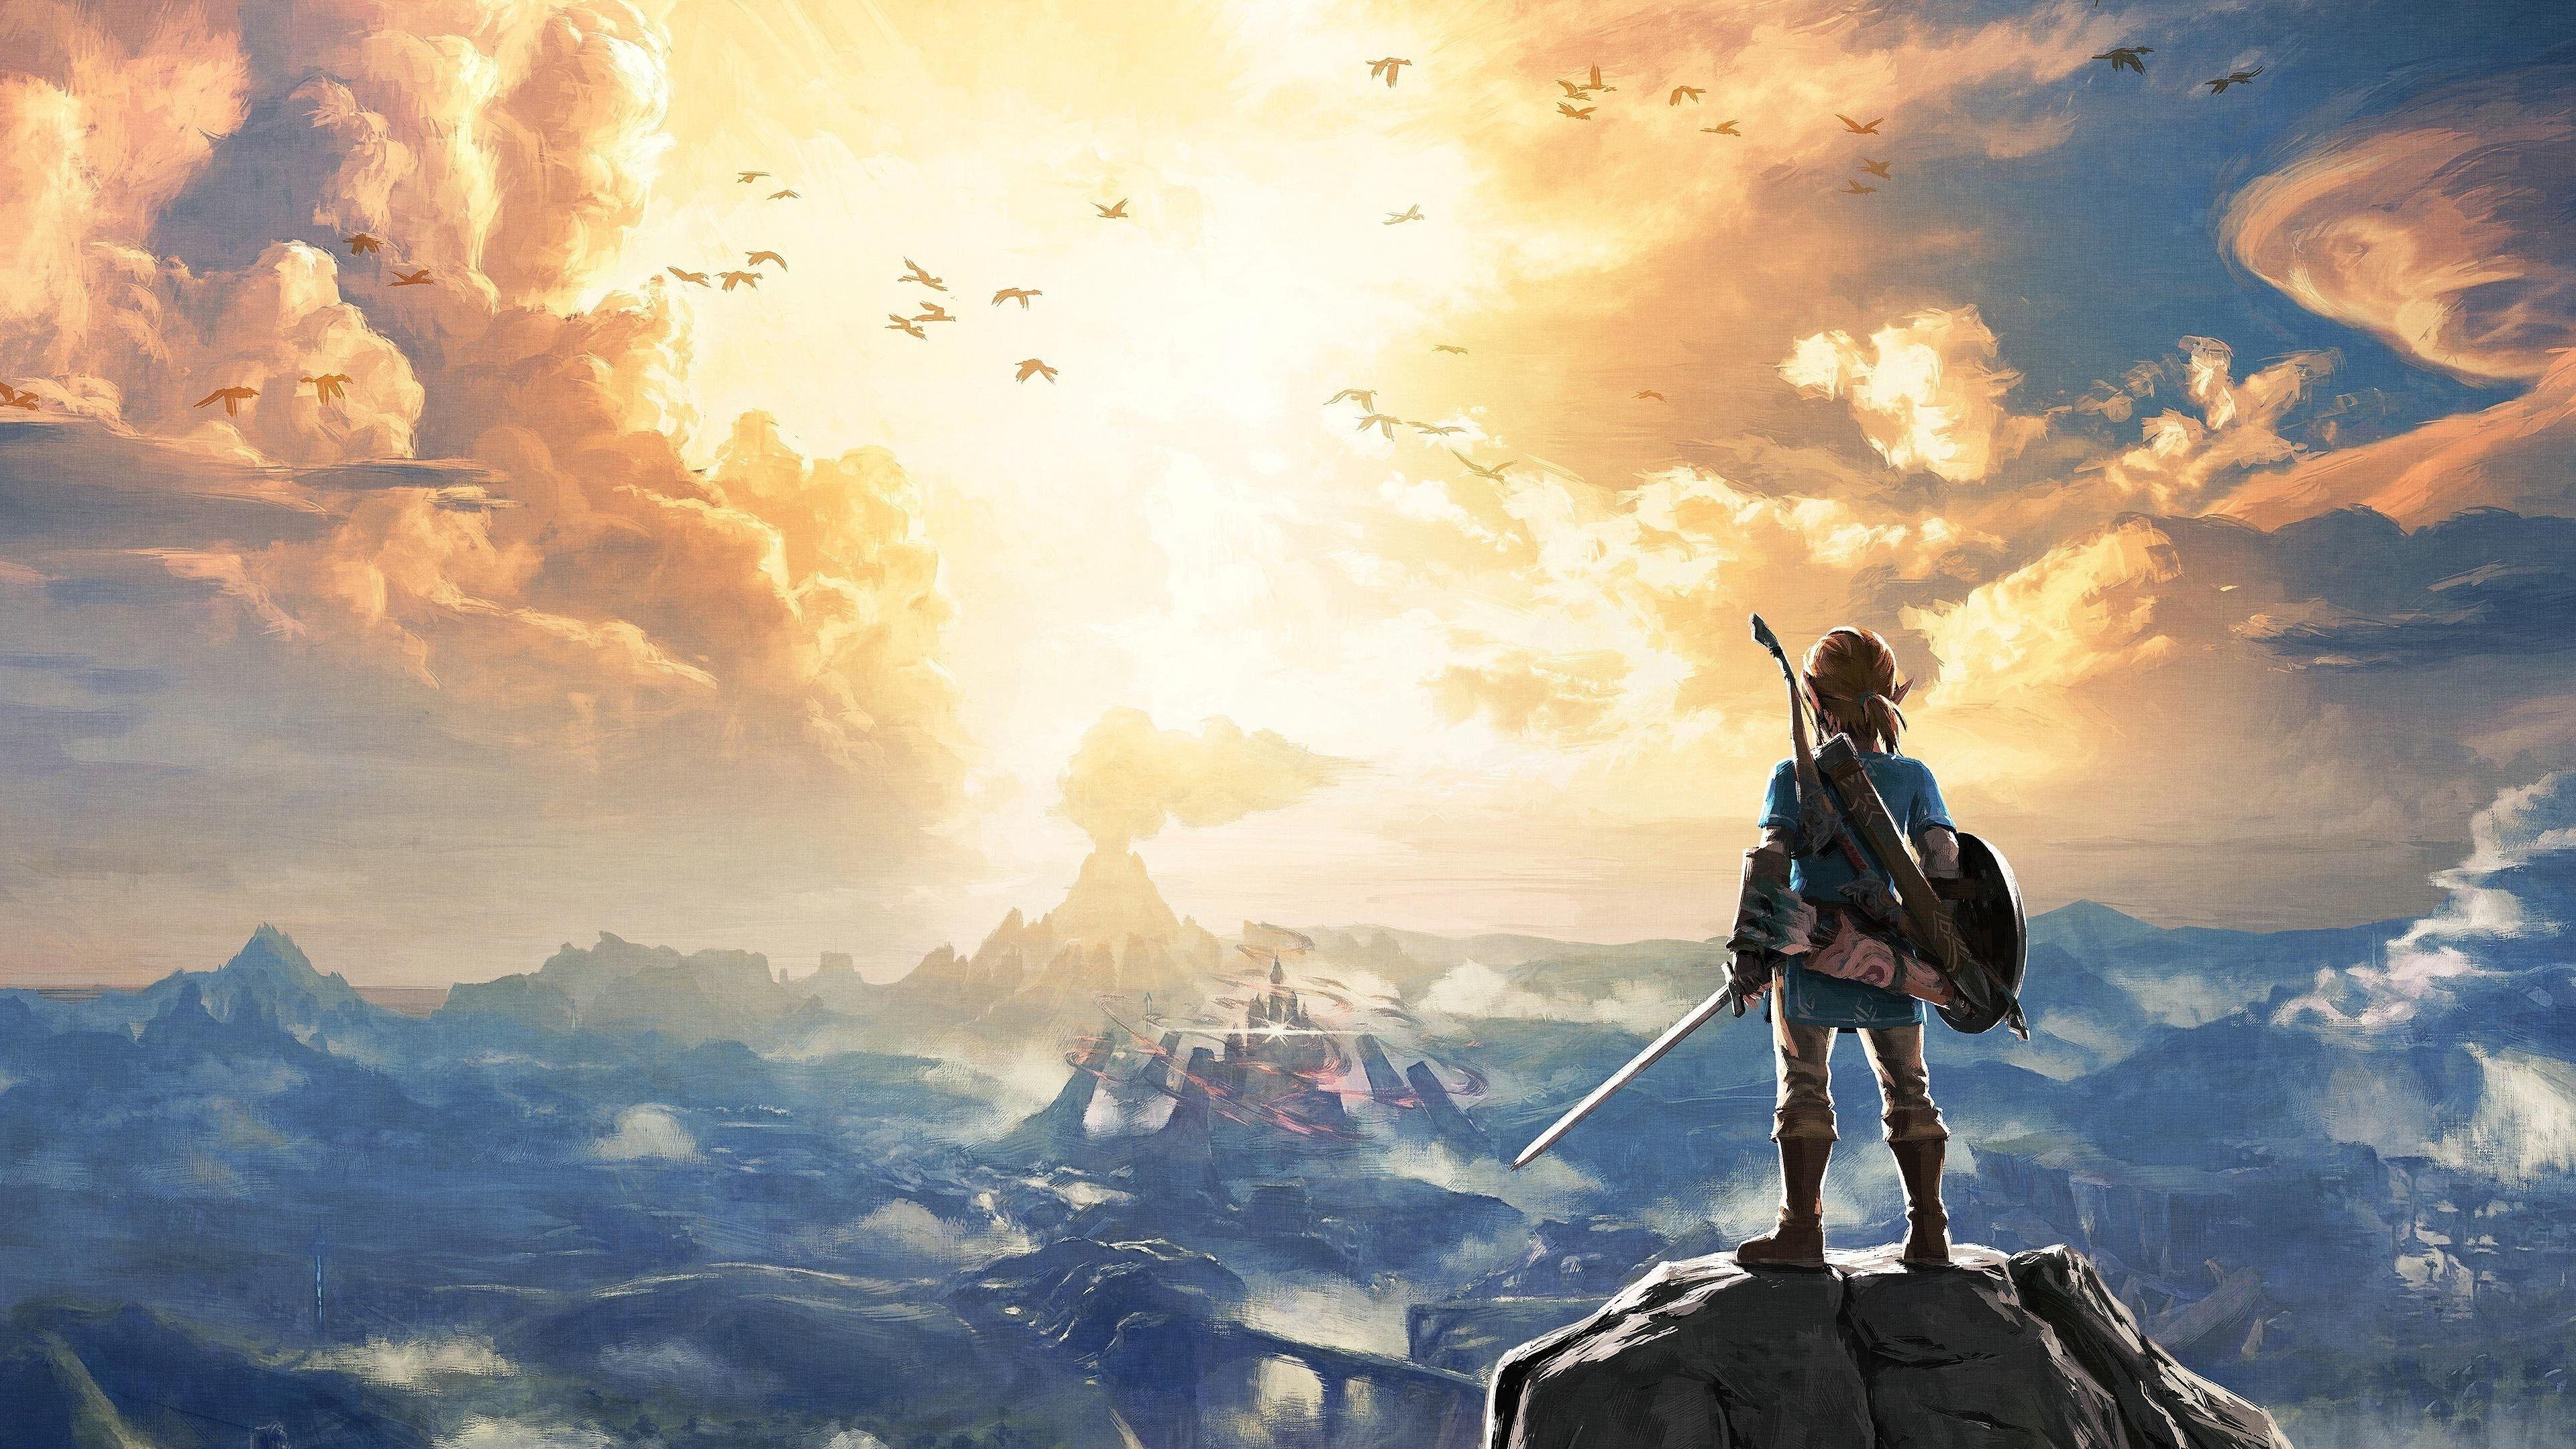 Legend Of Zelda Dual Screen Wallpapers Top Free Legend Of Zelda Dual Screen Backgrounds Wallpaperaccess